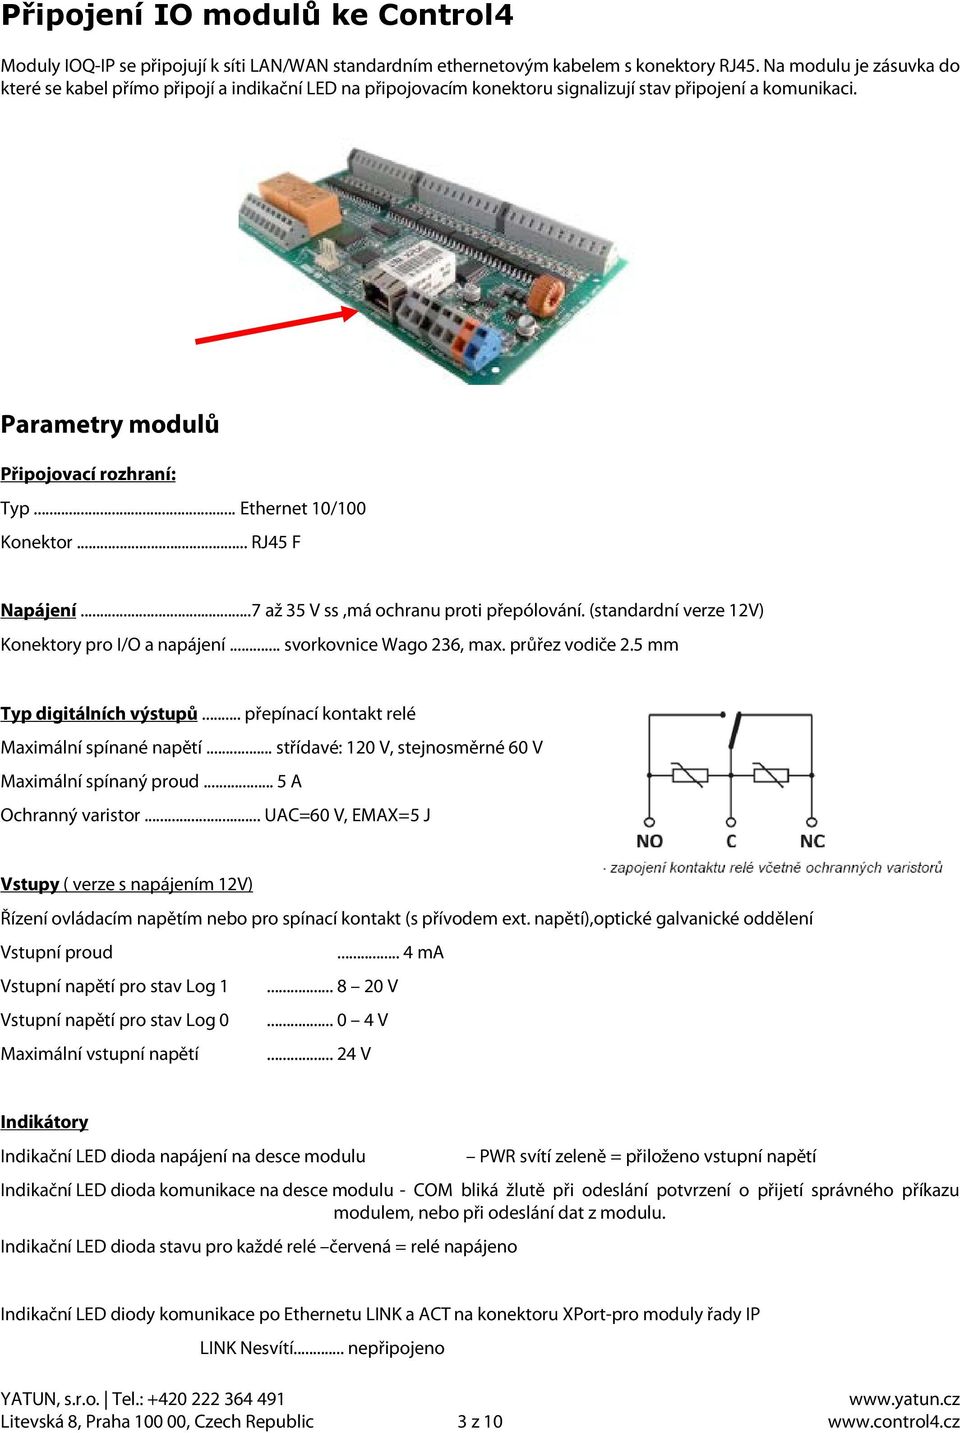 .. Ethernet 10/100 Konektor... RJ45 F Napájení...7 až 35 V ss,má ochranu proti přepólování. (standardní verze 12V) Konektory pro I/O a napájení... svorkovnice Wago 236, max. průřez vodiče 2.